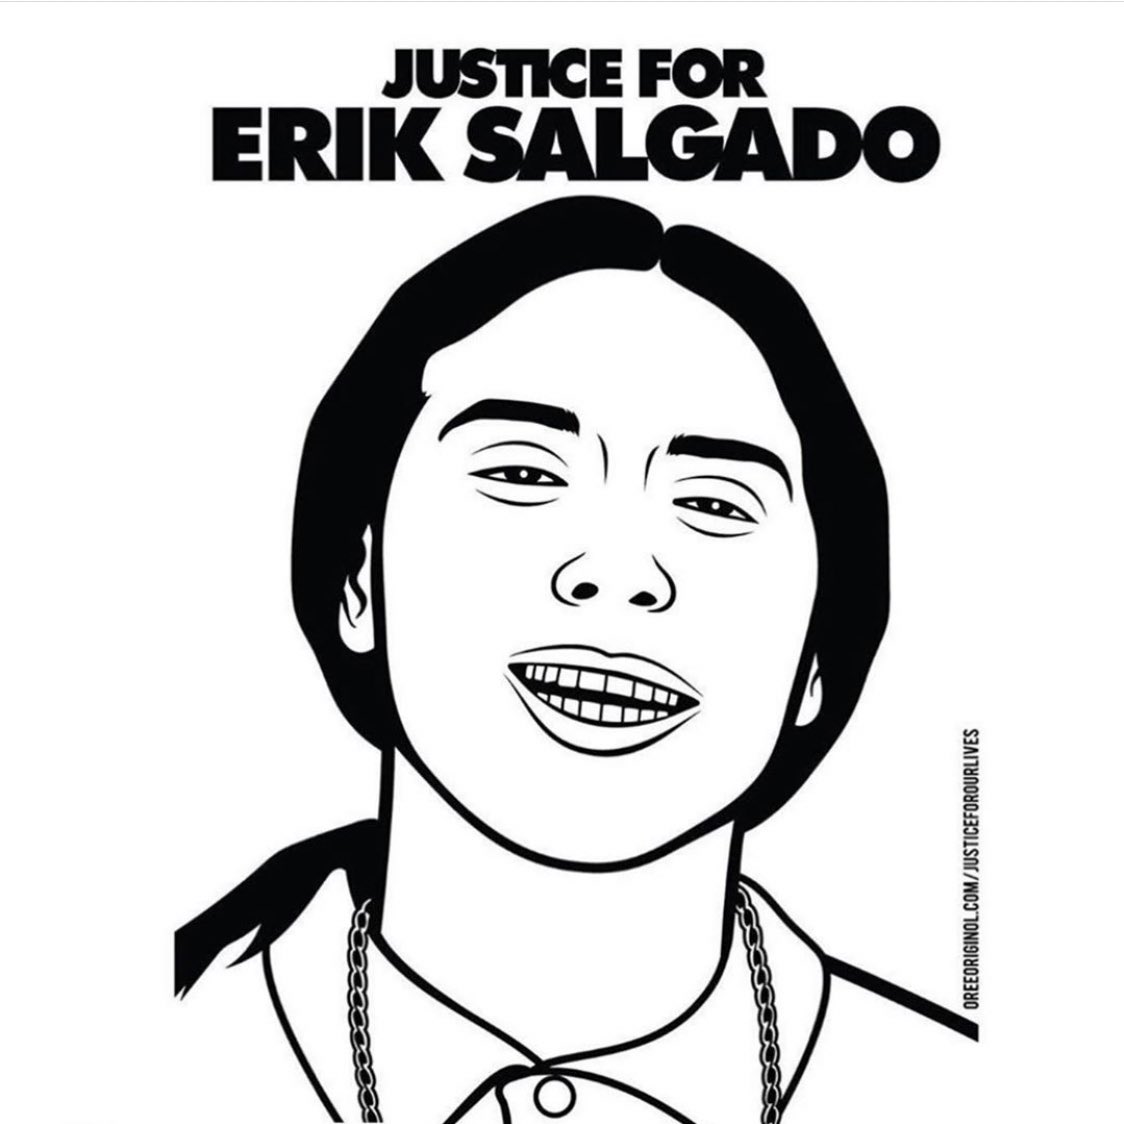 Erik Salgado 23 years old Mexican June 6, 2020 Link to everything needed below  #JusticeForErikSalgado https://linktr.ee/justice4erik 